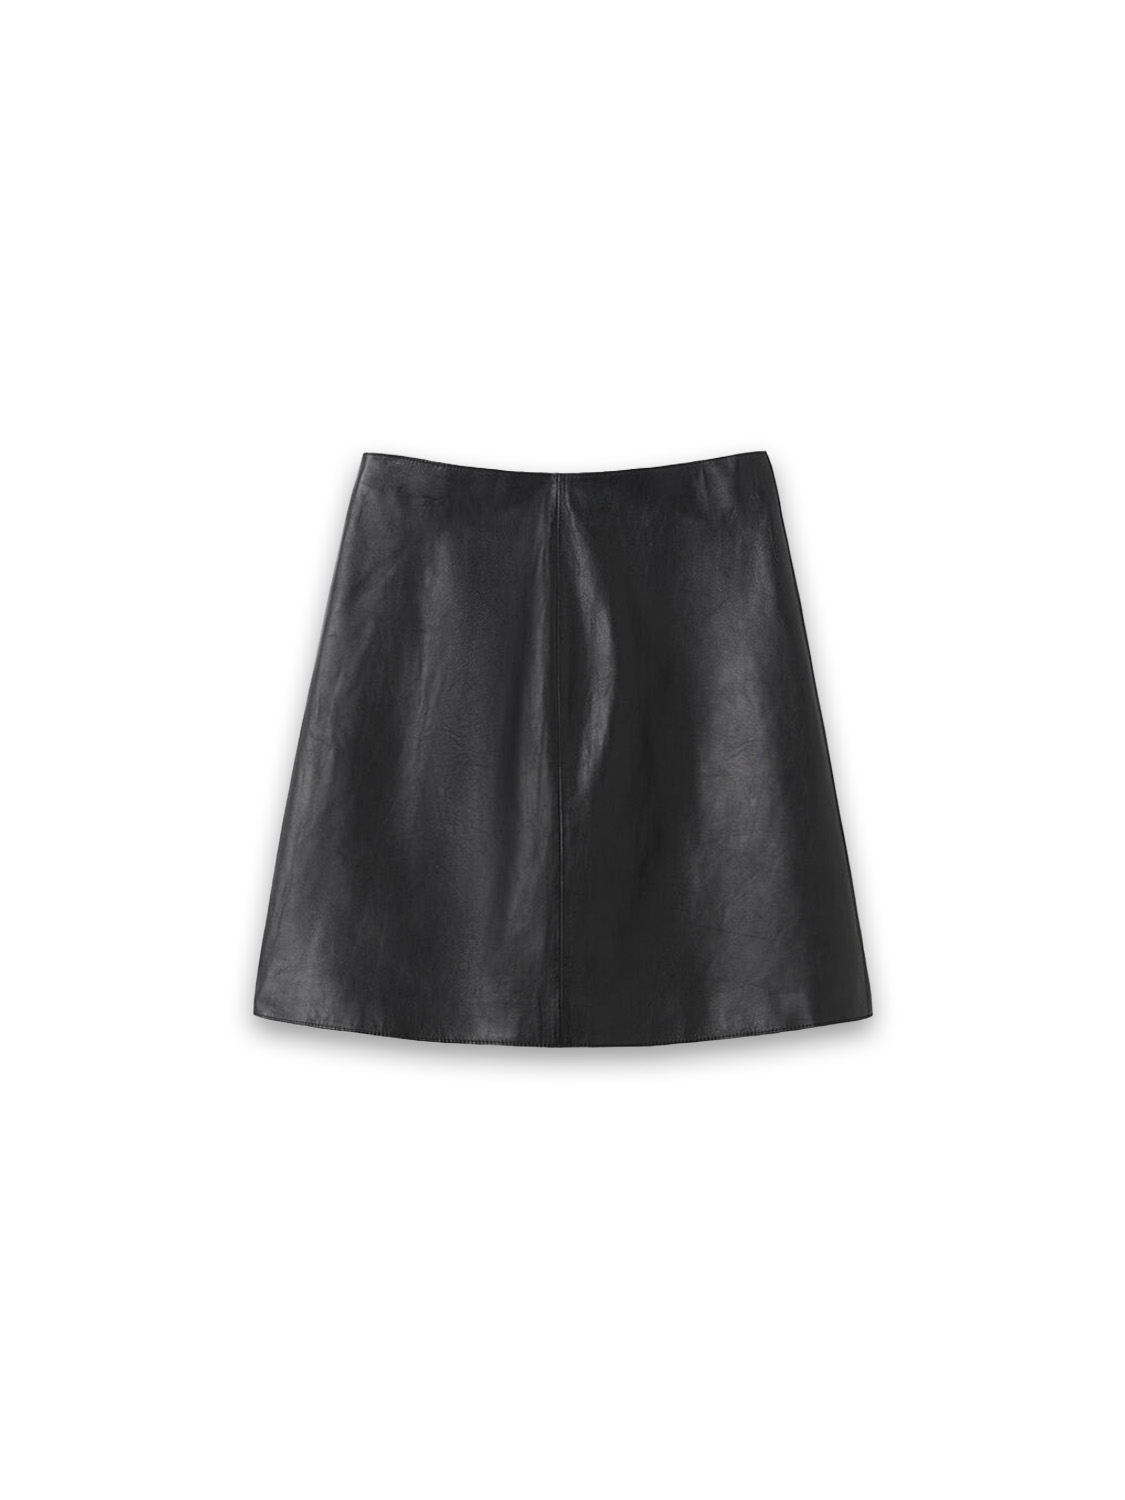 Coras lambskin mini skirt 